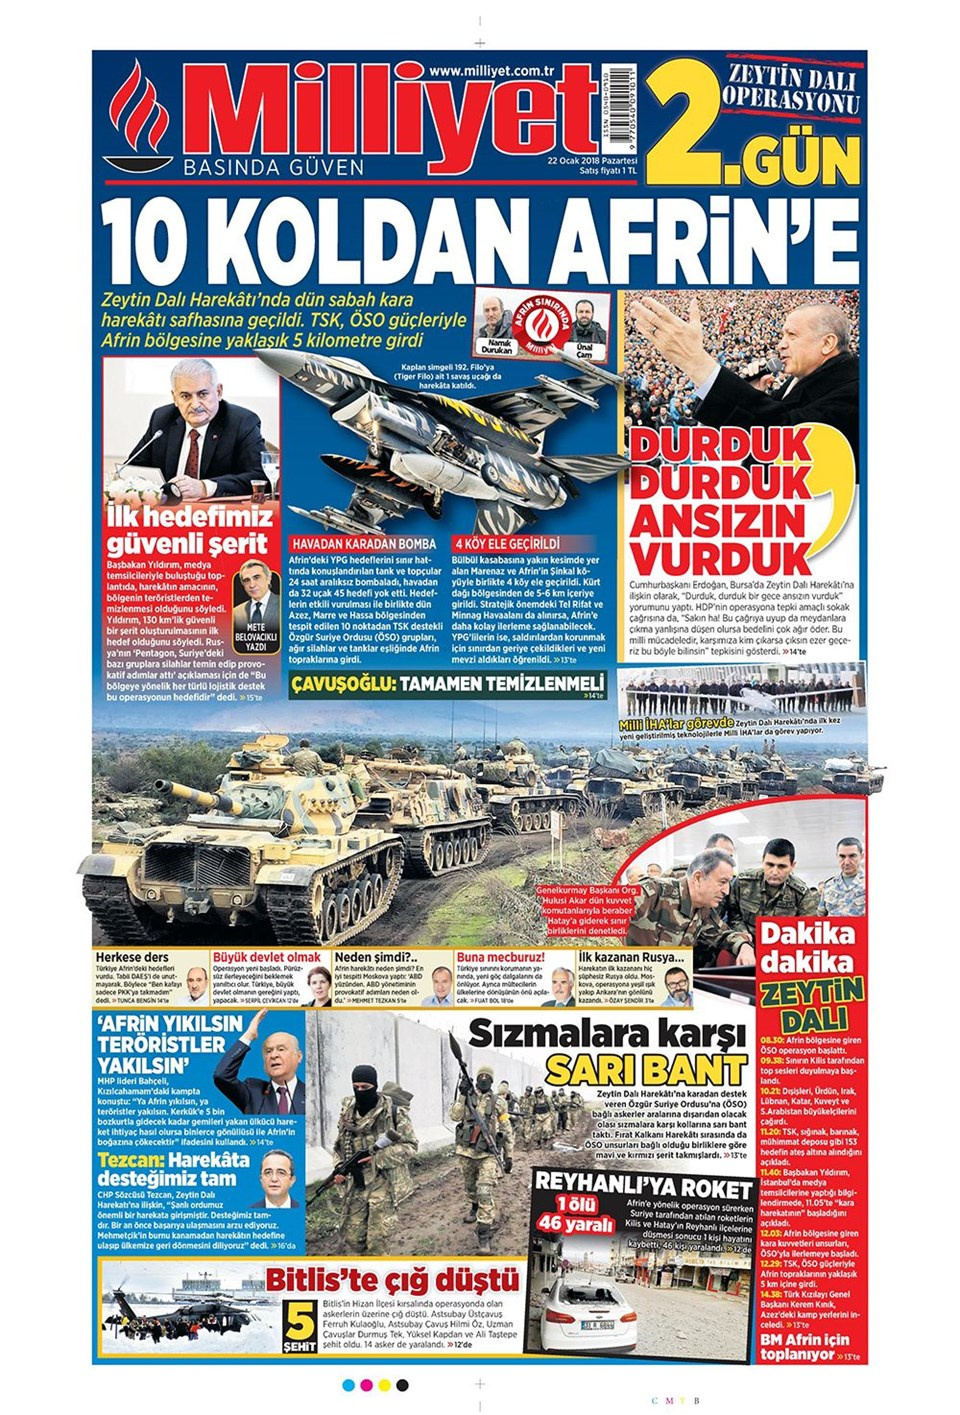 22 Ocak 2018 Hürriyet - Sözcü - Sabah gazete manşetleri